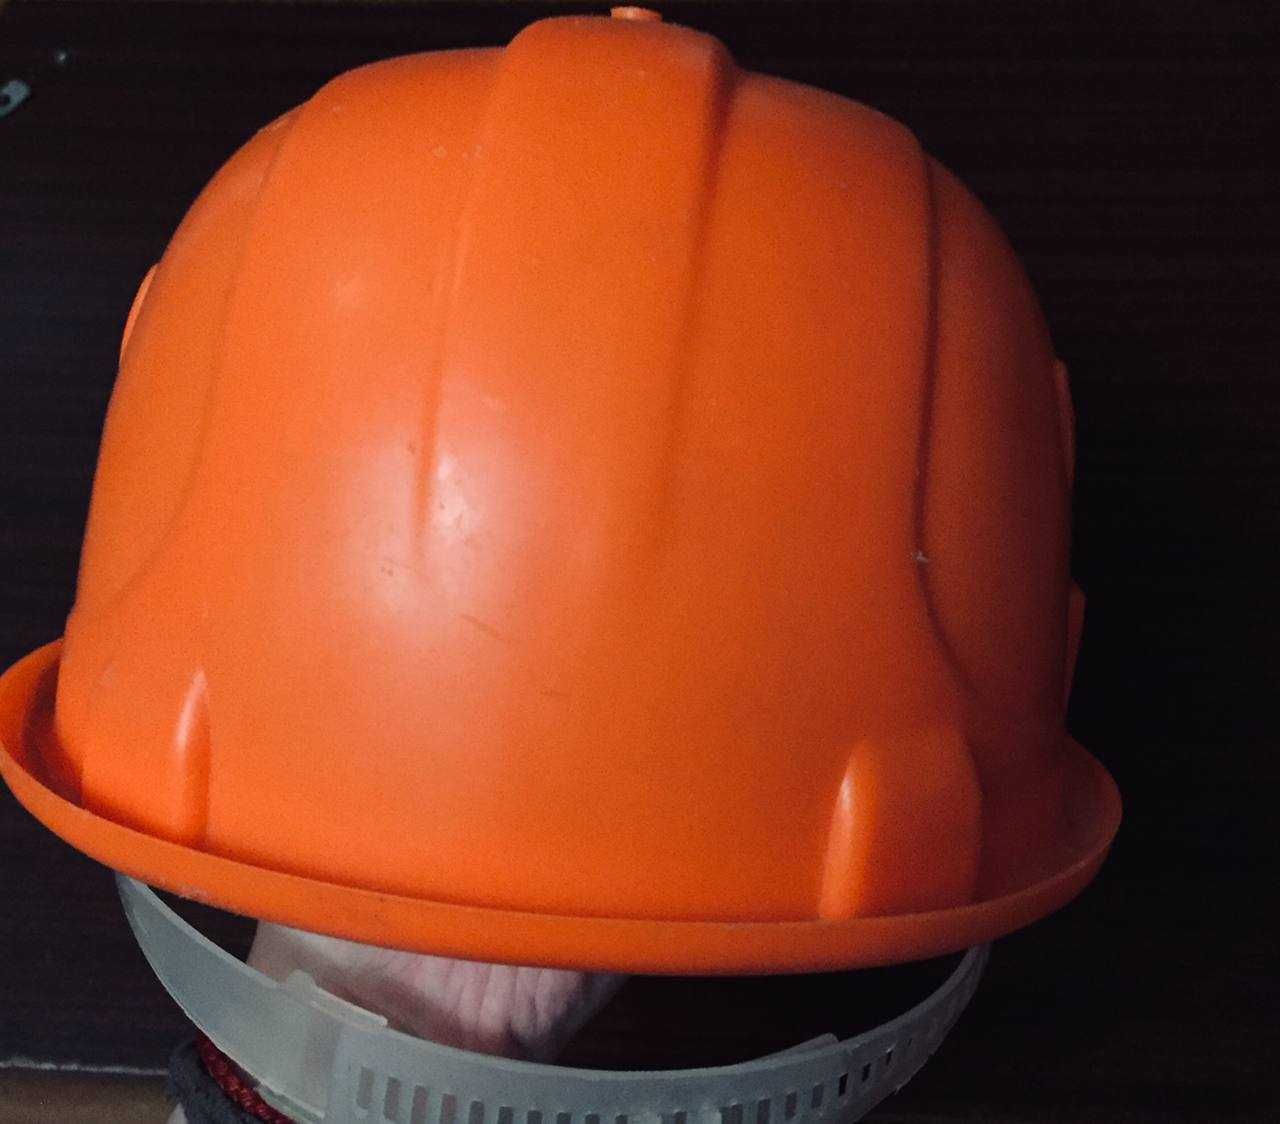 Каска строителя оранжевая